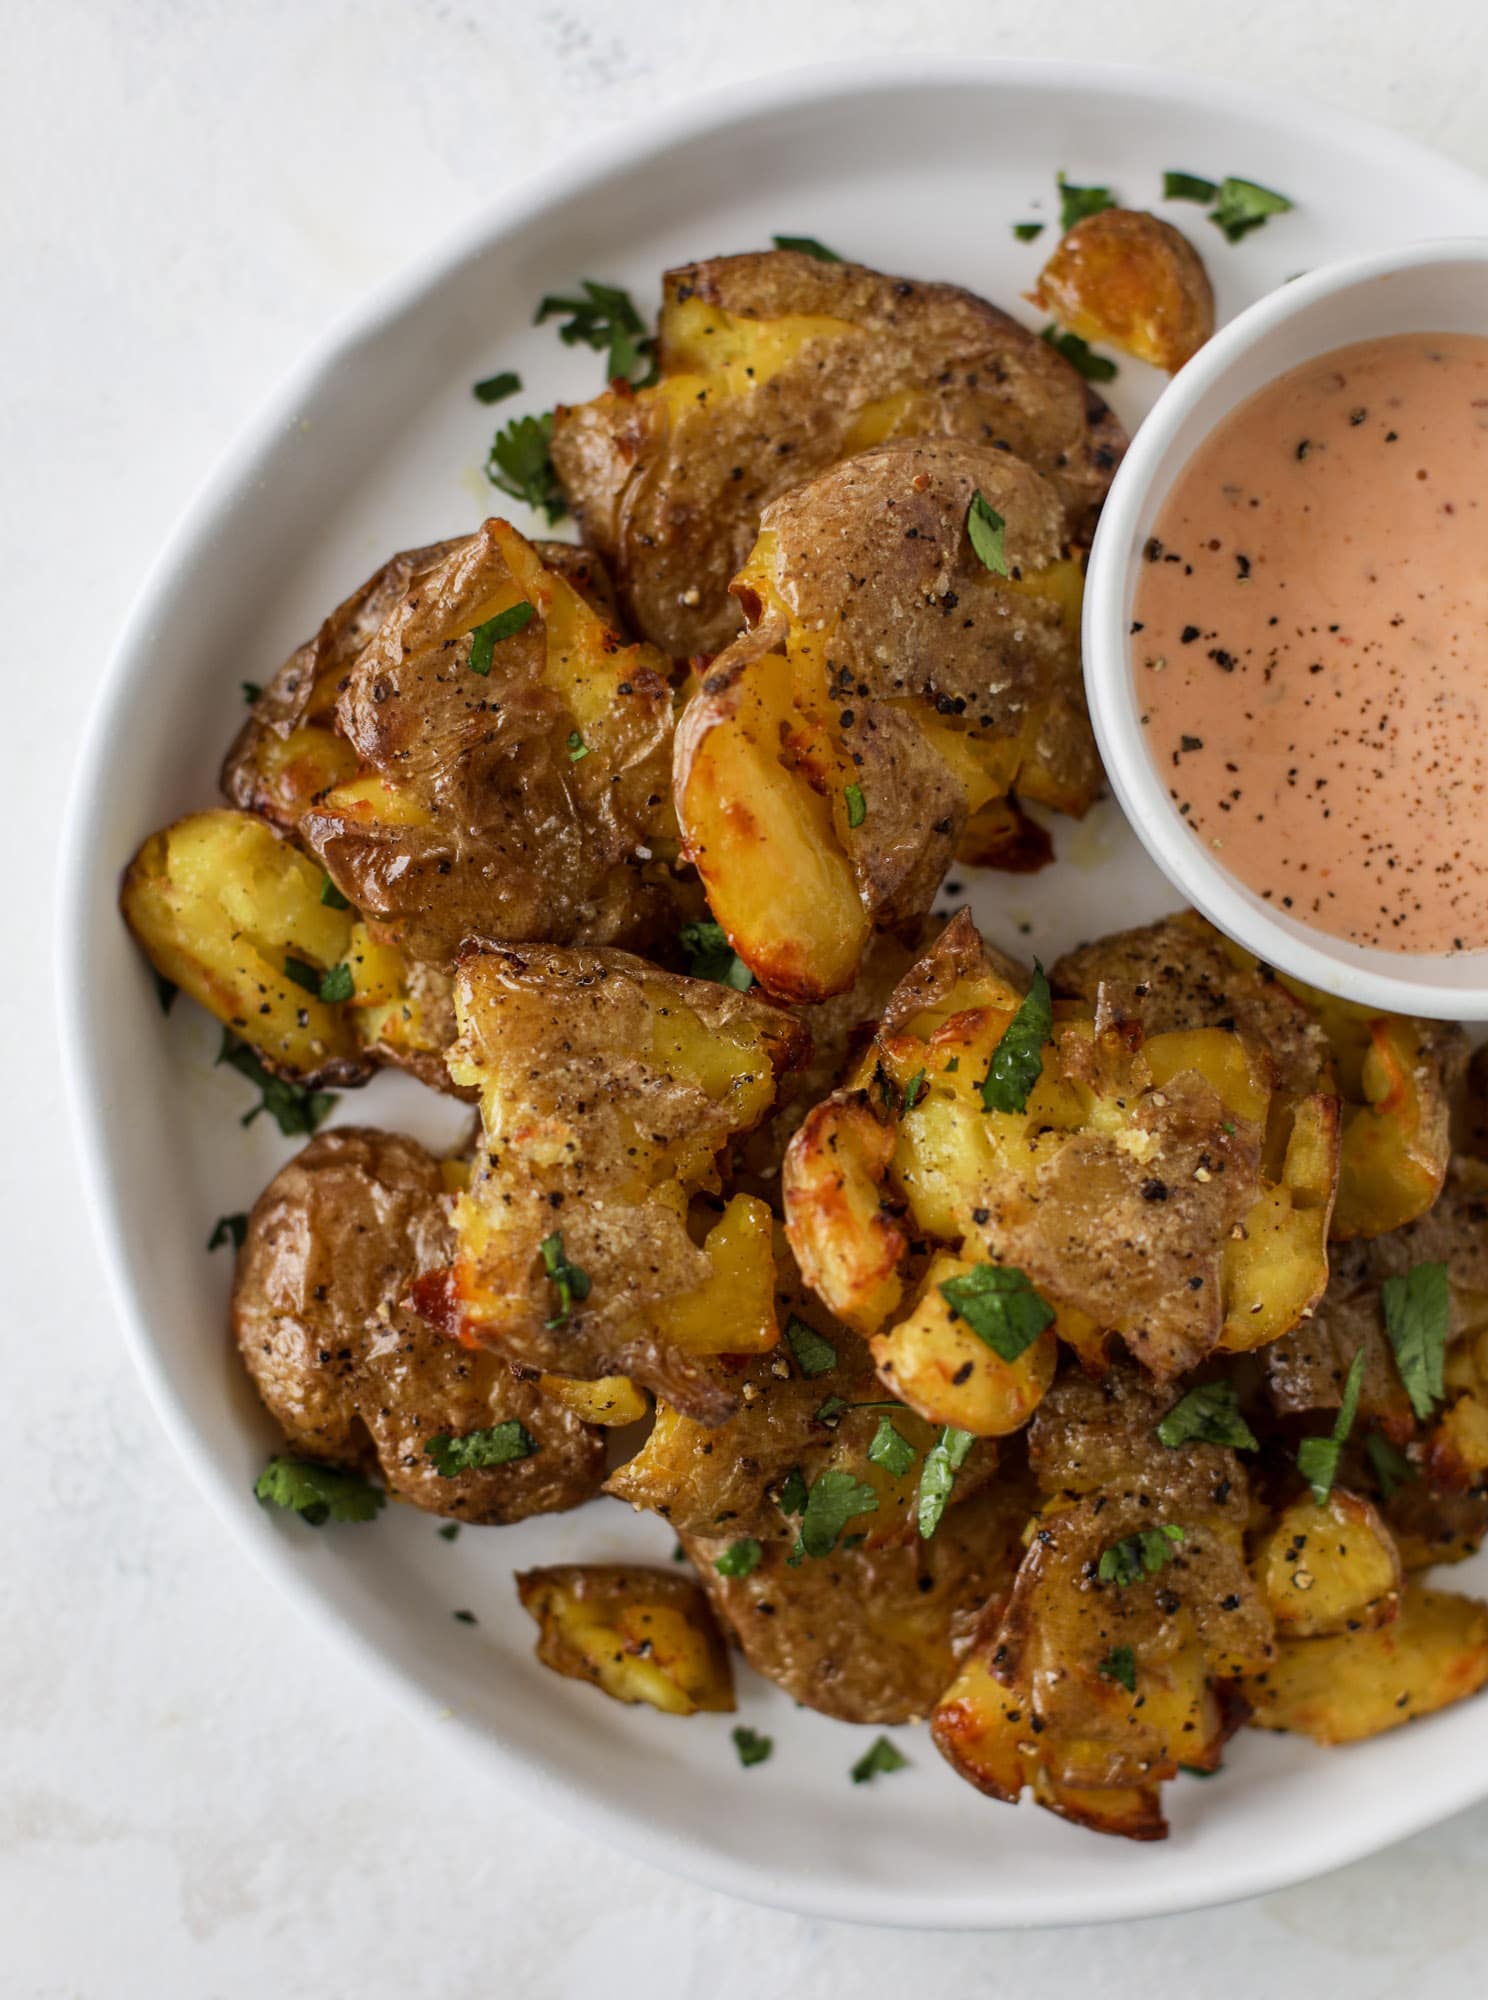 这是我们最喜欢的配菜!酥脆的土豆泥在烤箱里烤到完美。与蘸酱或配菜一起食用!